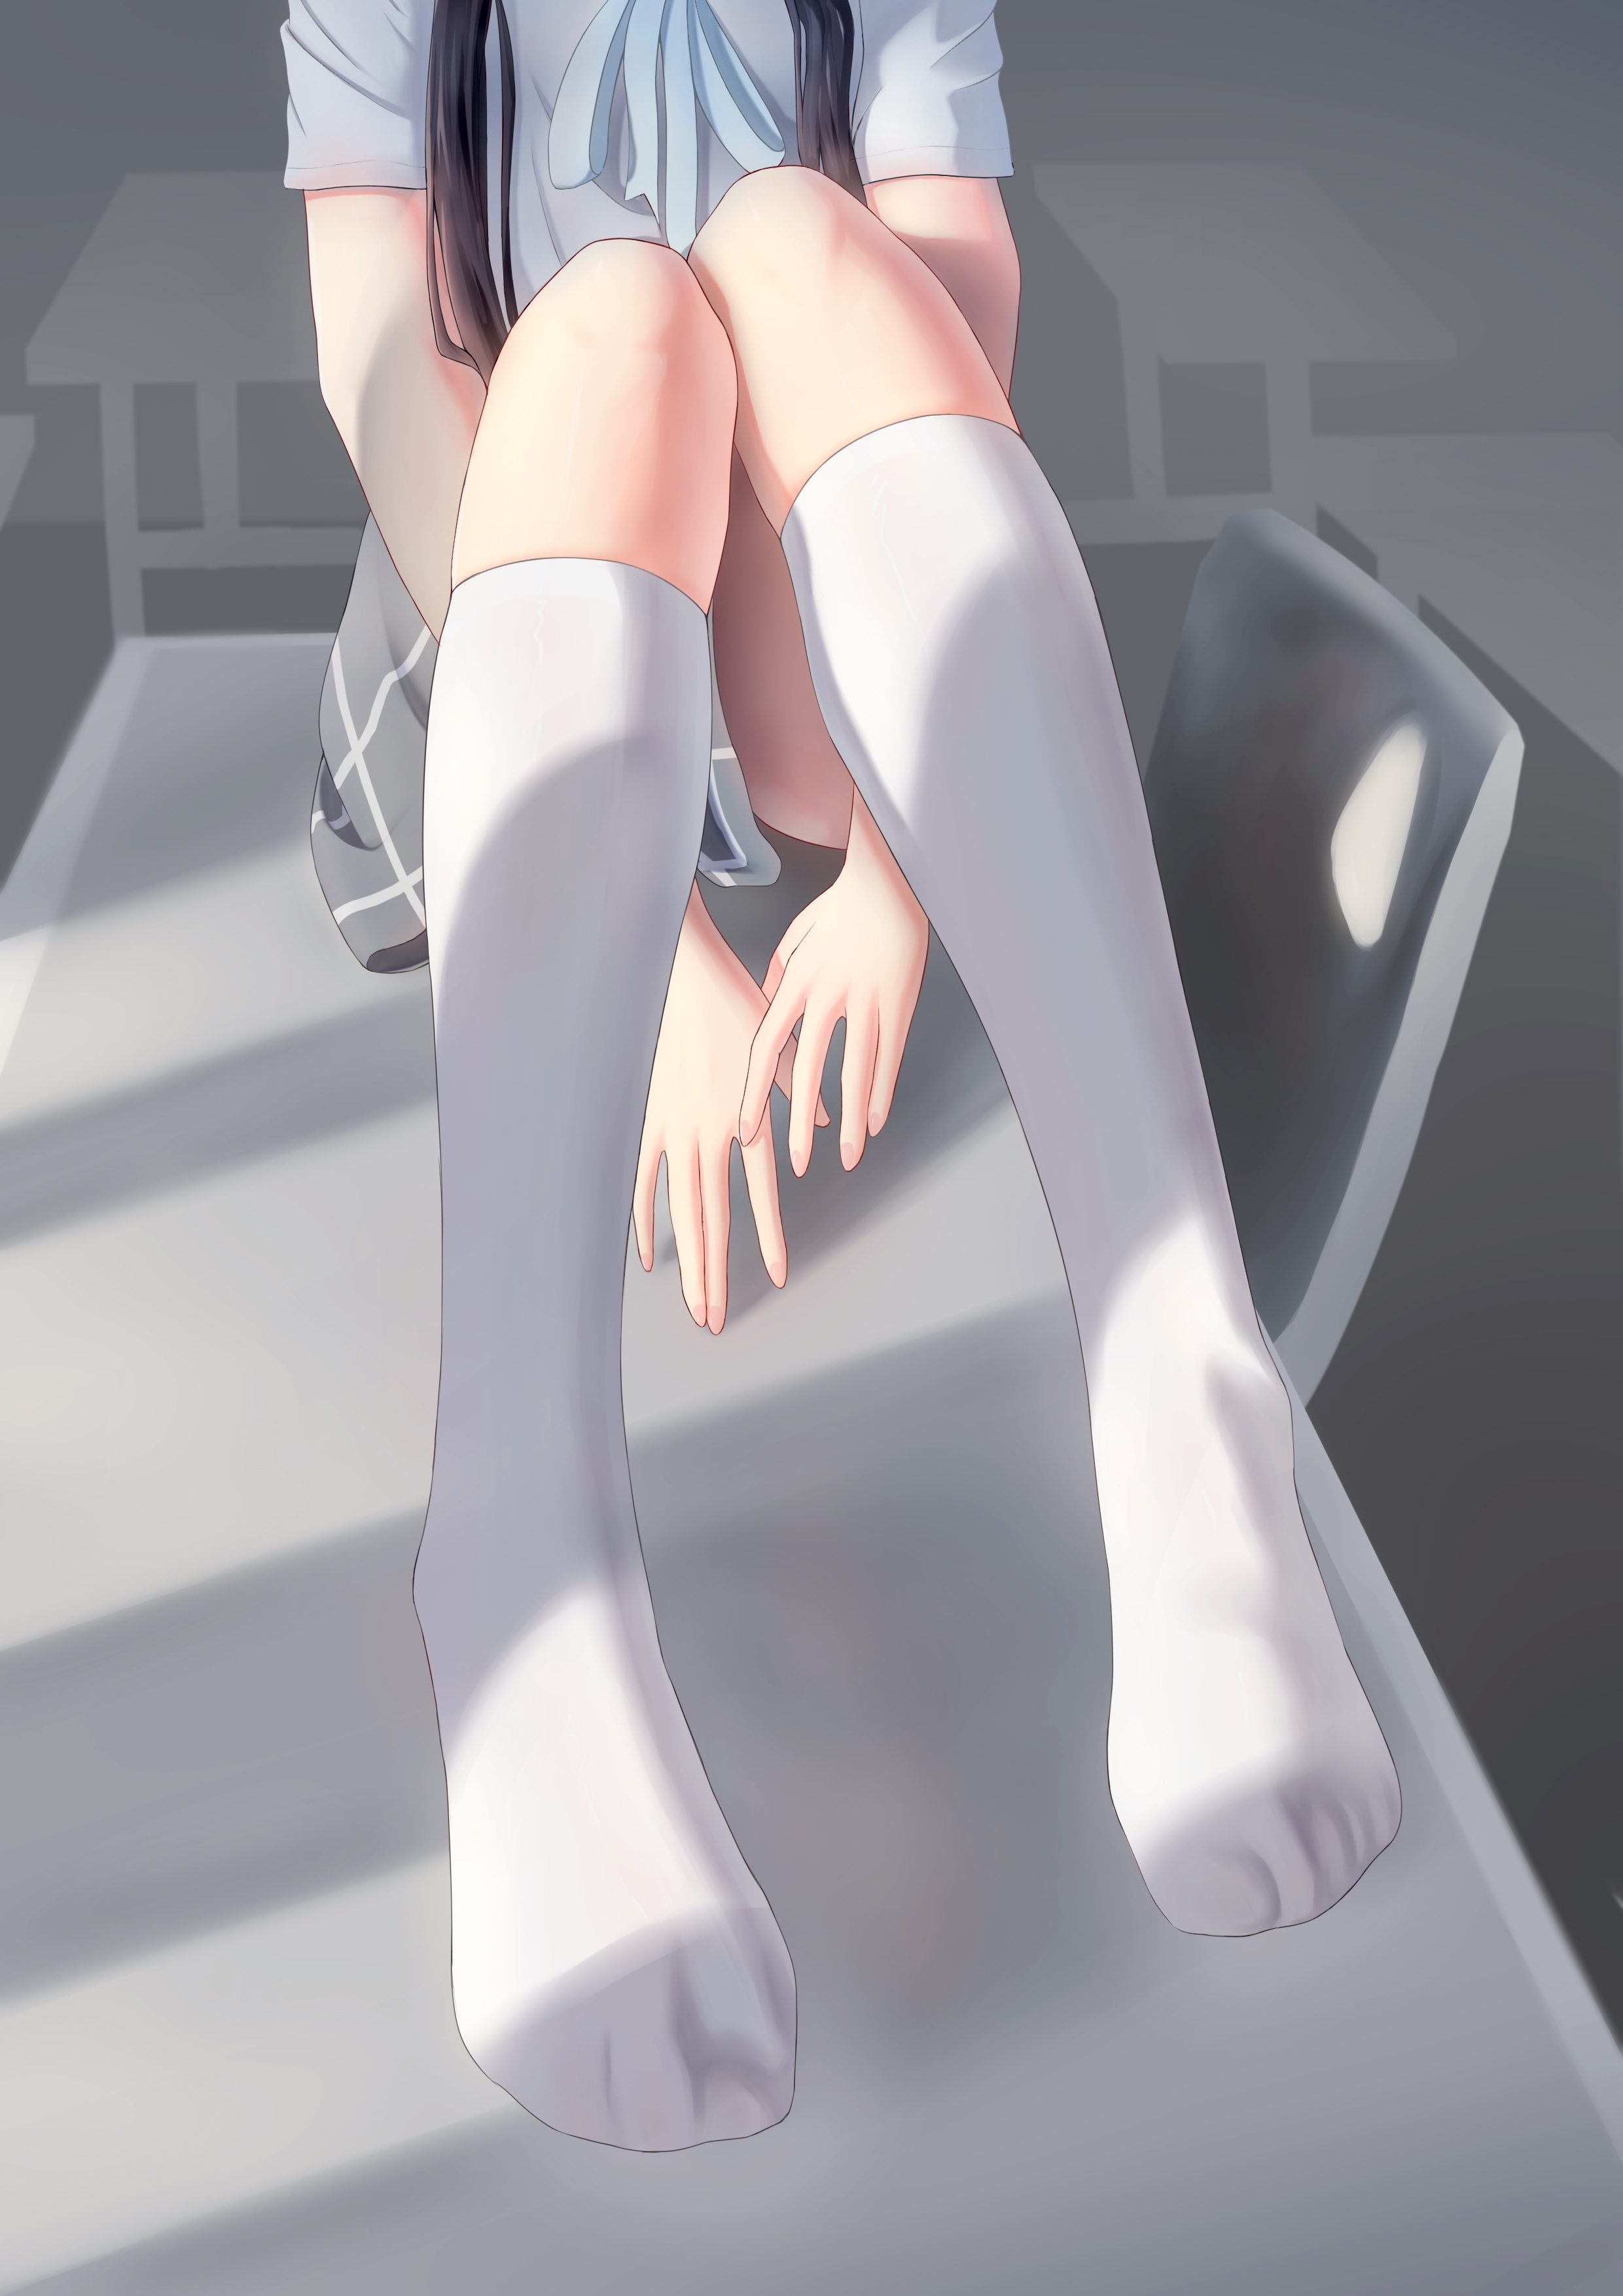 White Socks Skirt Anime Girls School Uniform Schoolgirl 2480x3508